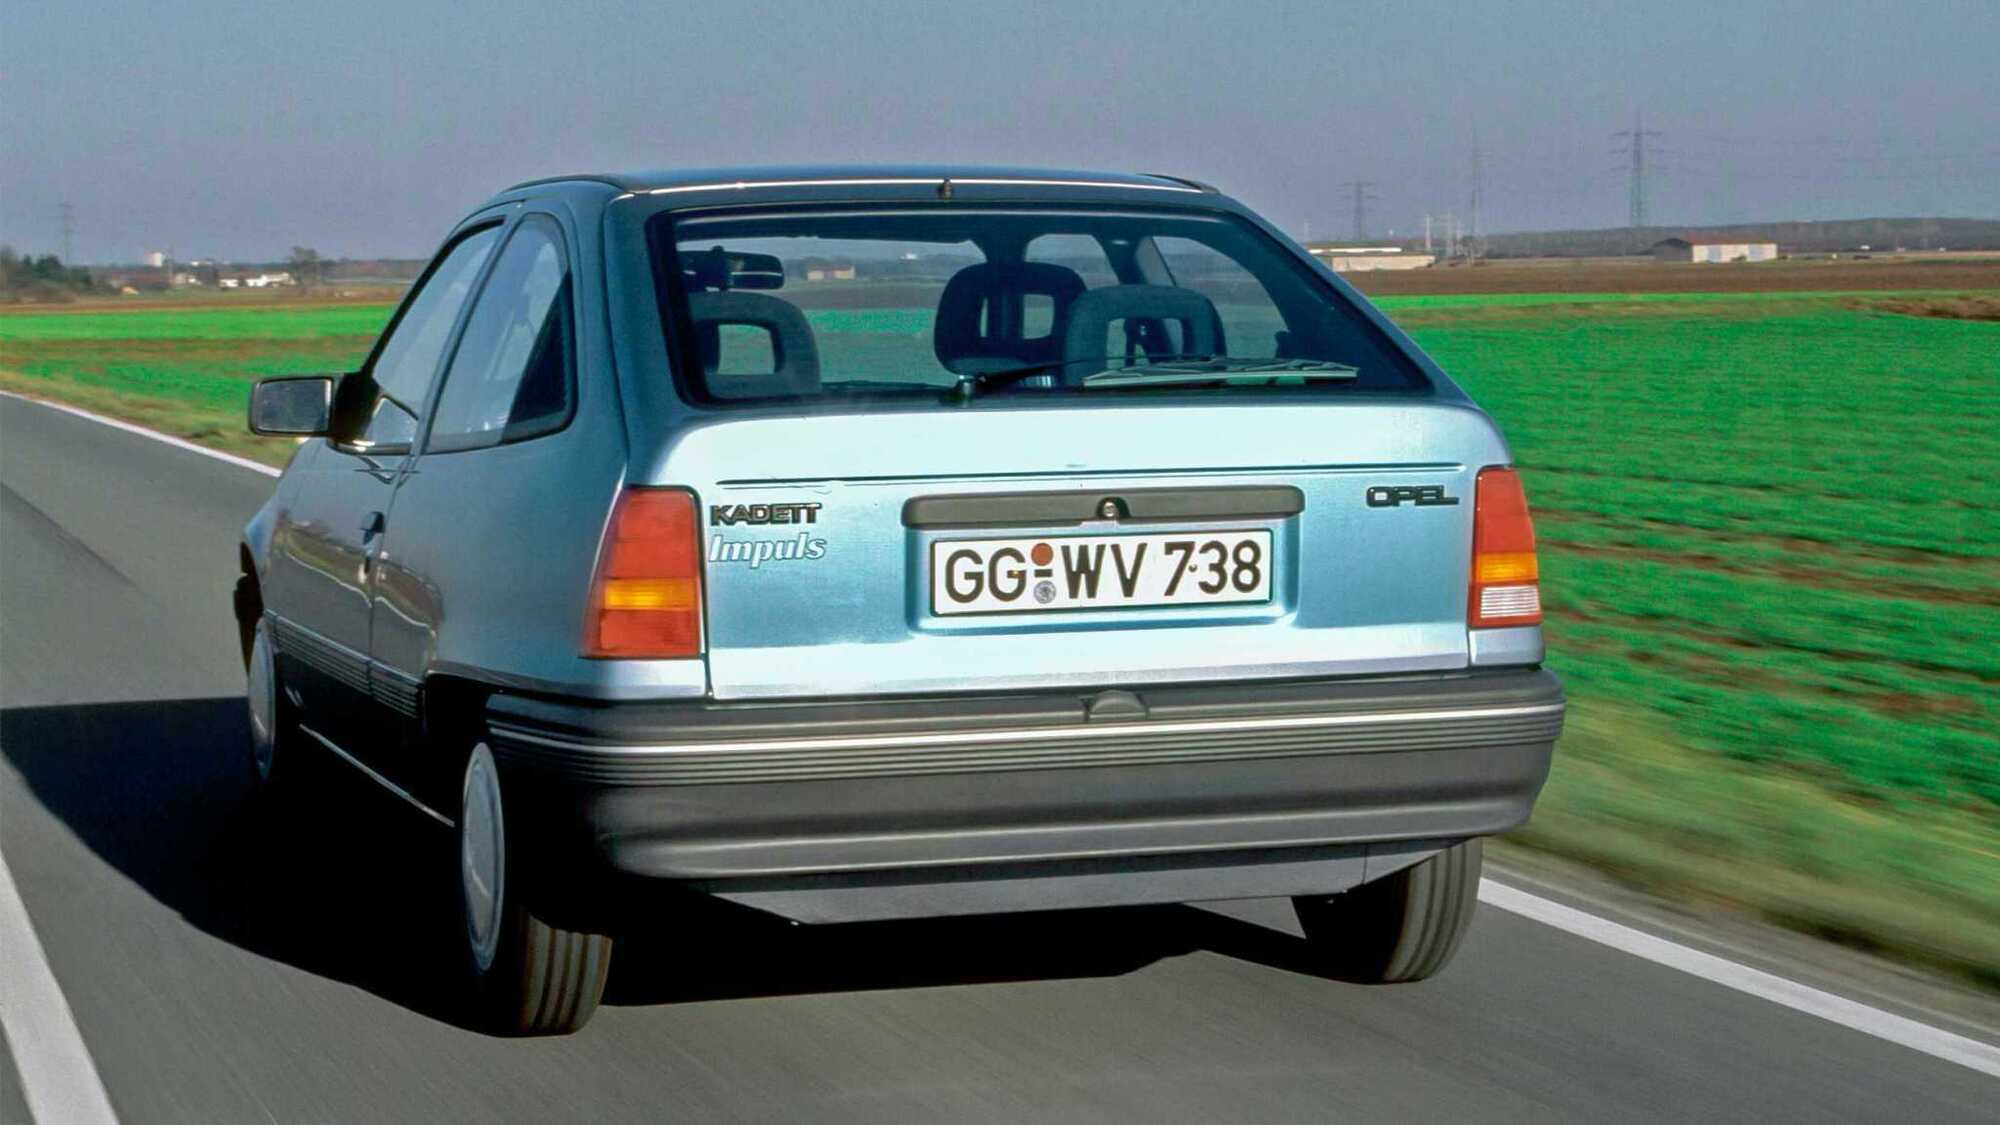 Opel Impuls I.